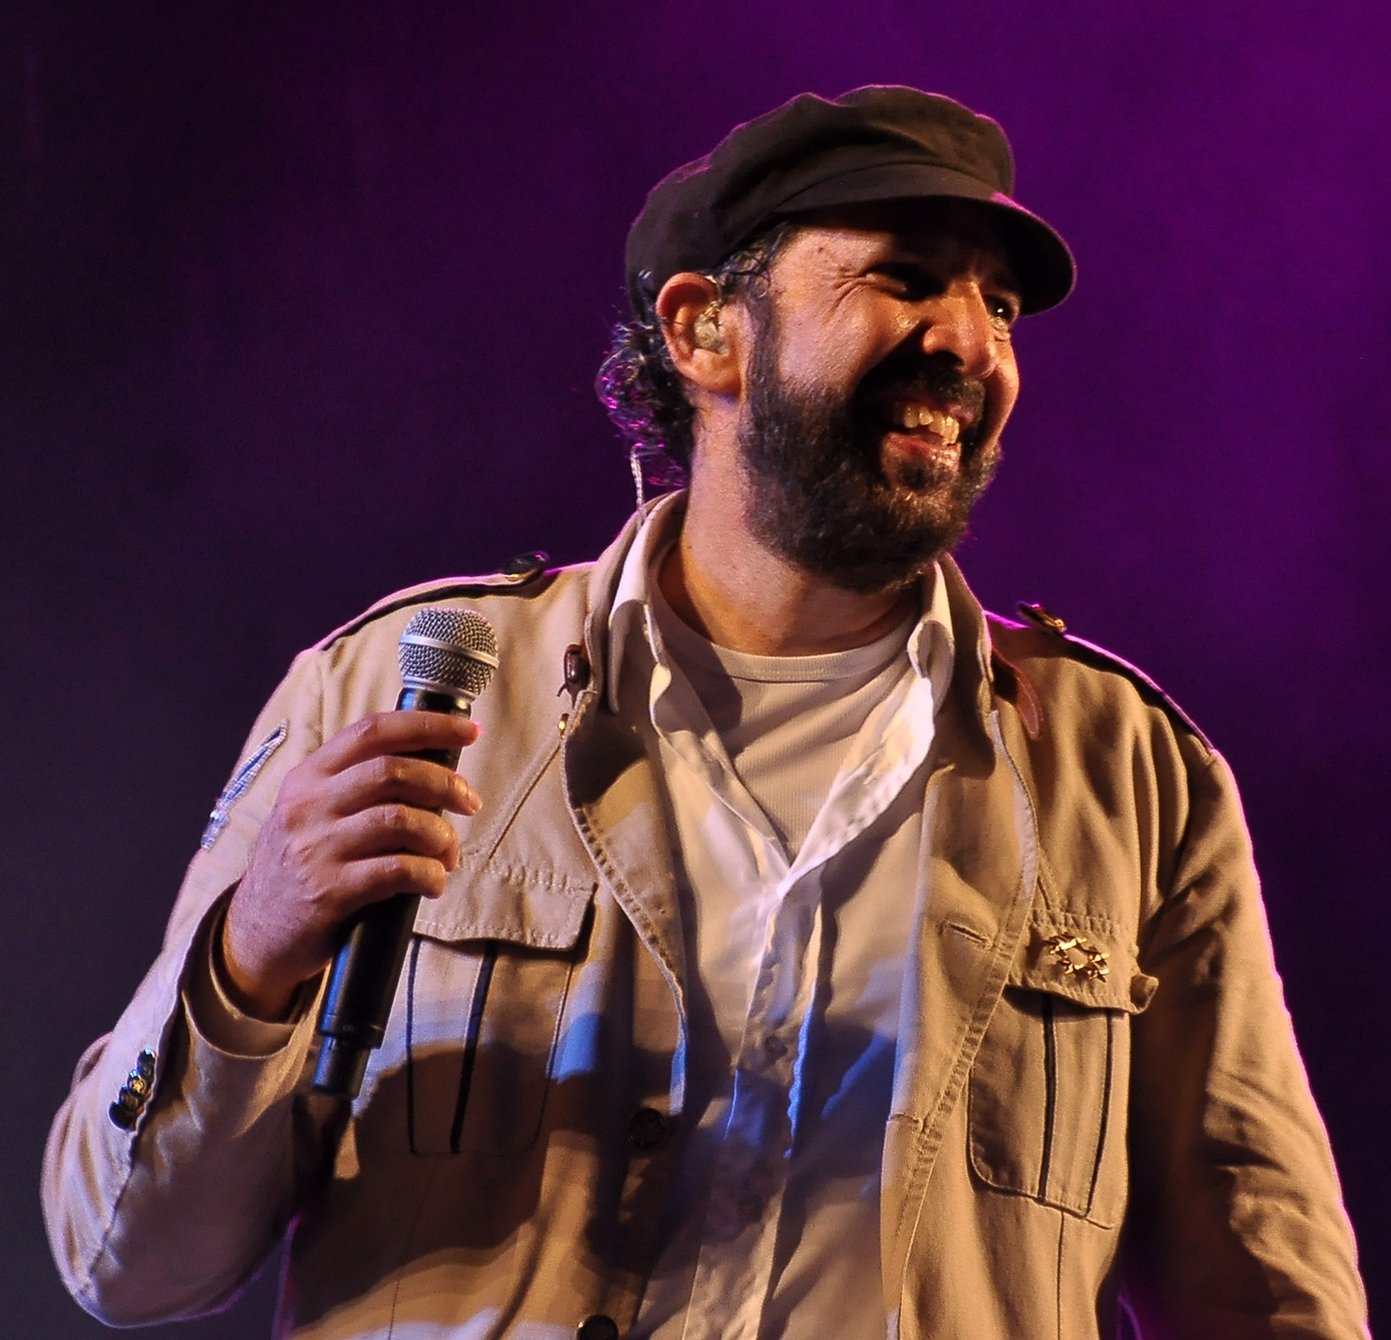 Comença el Festival Cruïlla 2022: Juan Luis Guerra i Rubén Blades junts per primer cop a Europa